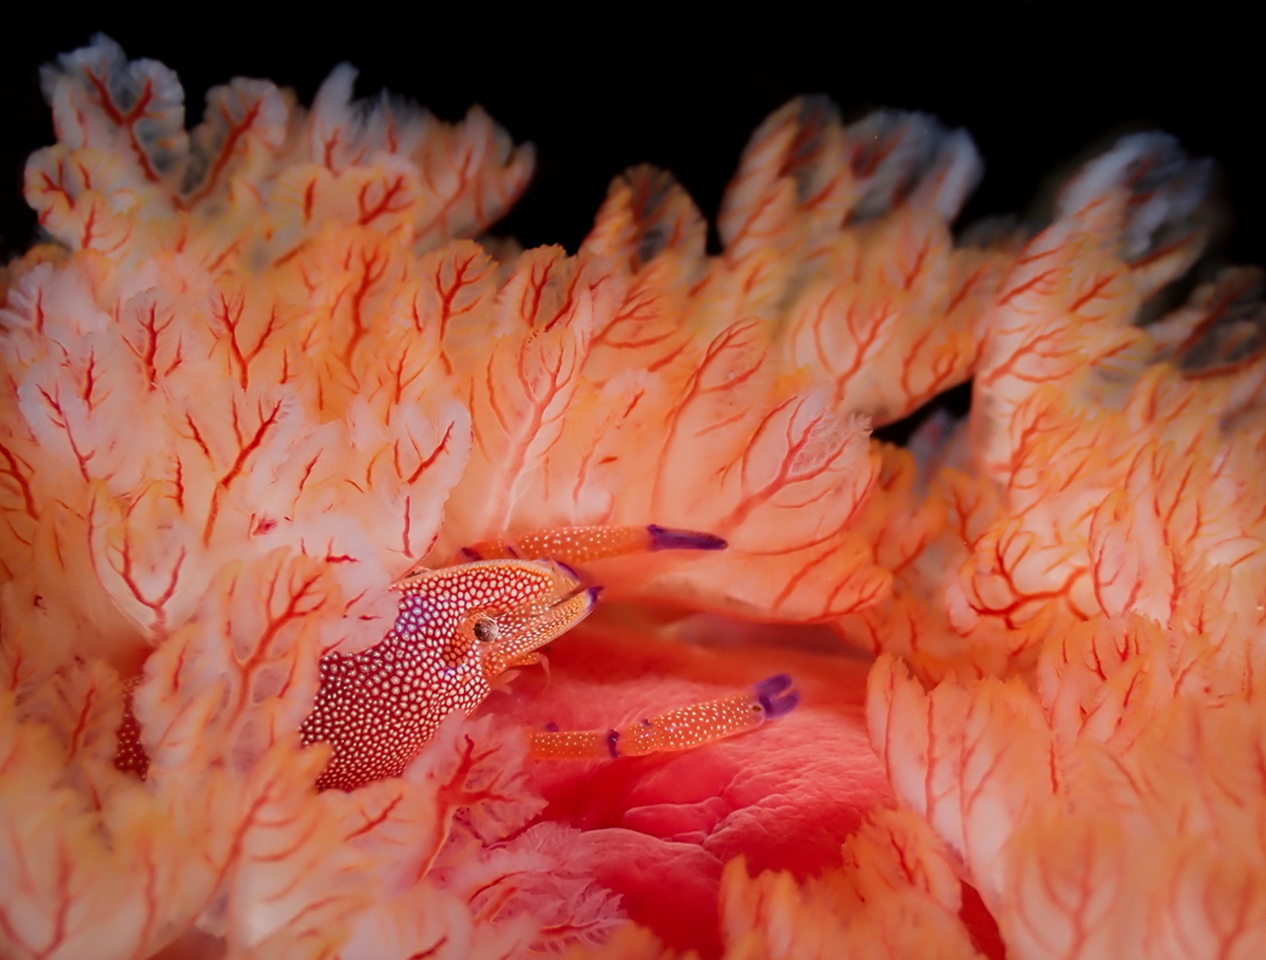 Победитель в номинации «Компактная камера». Маленькая креветка прячется в жабрах голожаберного моллюска. Остров Реюньон. Фото: Miguel Ramirez/Through Your Lens